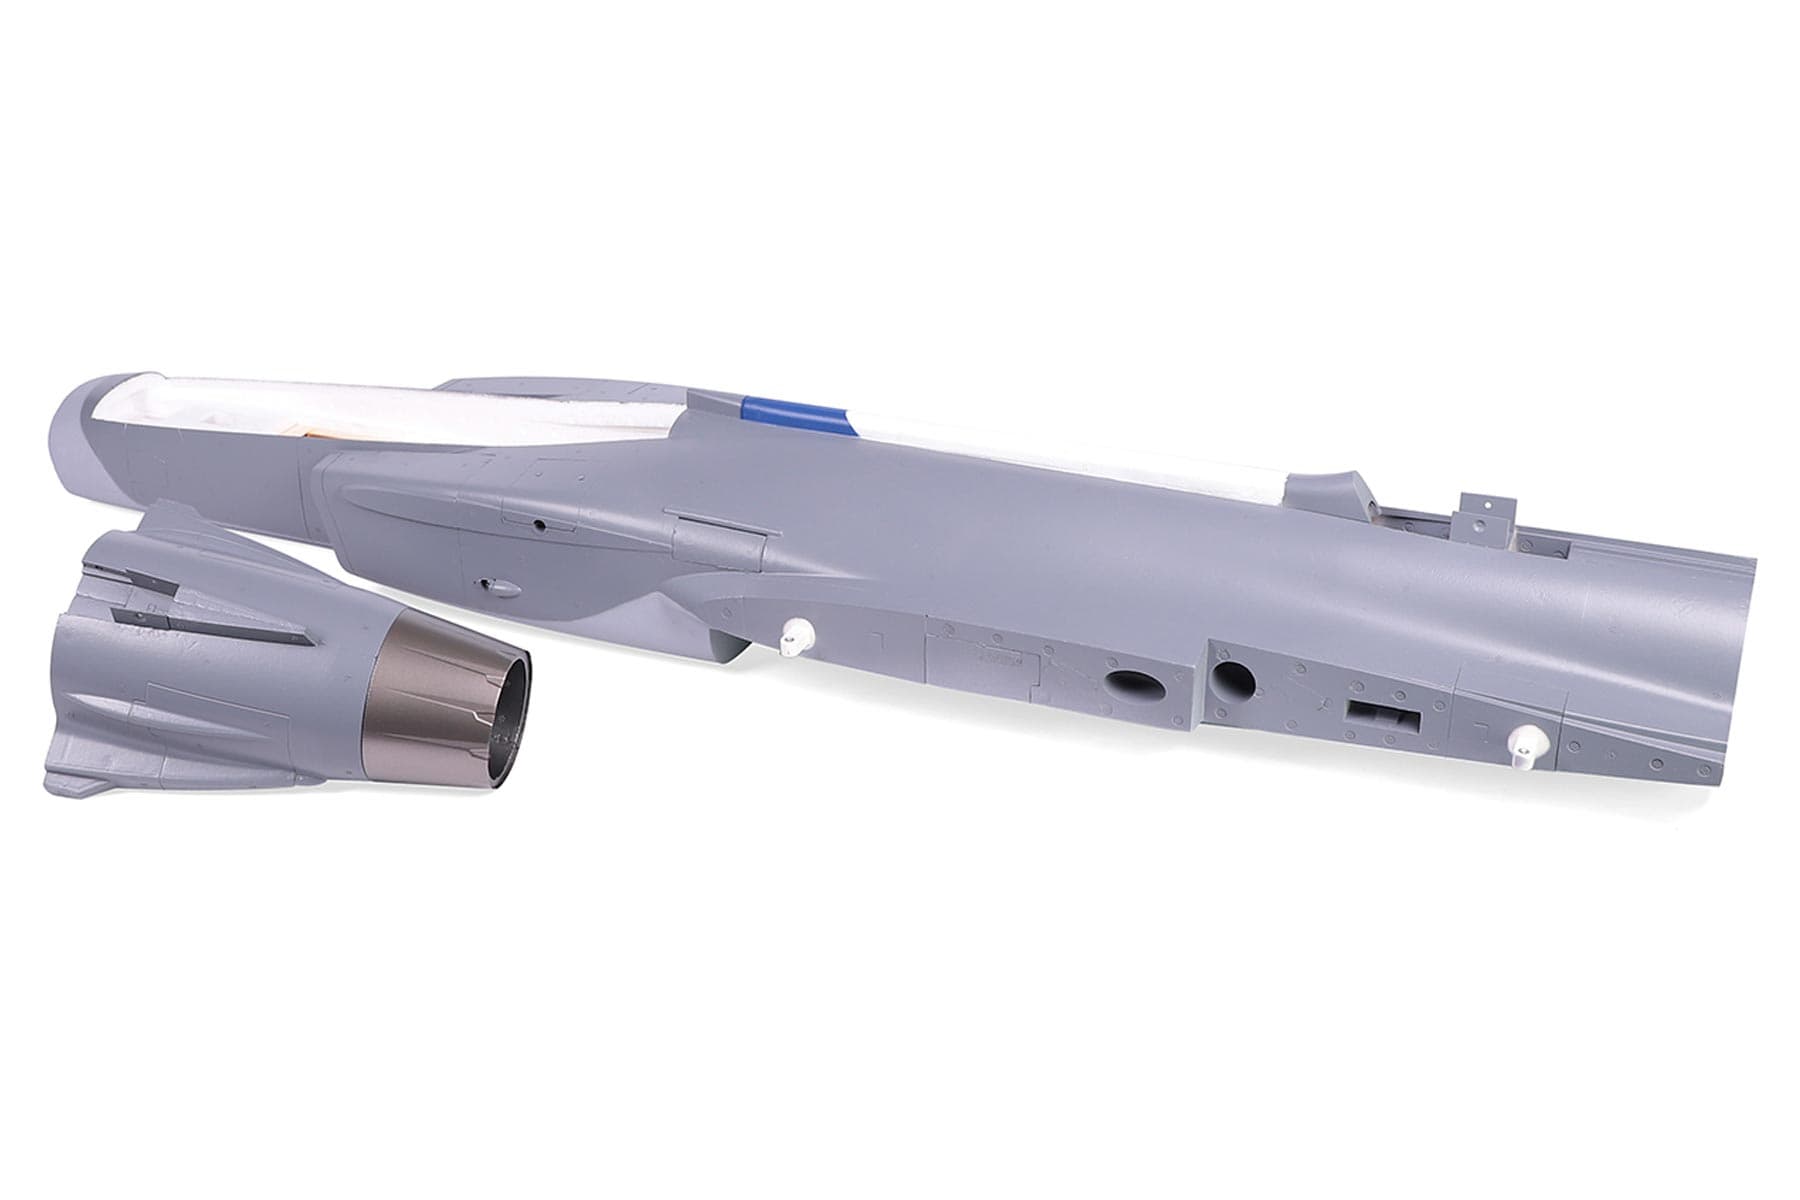 Freewing 80mm EDF JAS-39 Gripen Fuselage